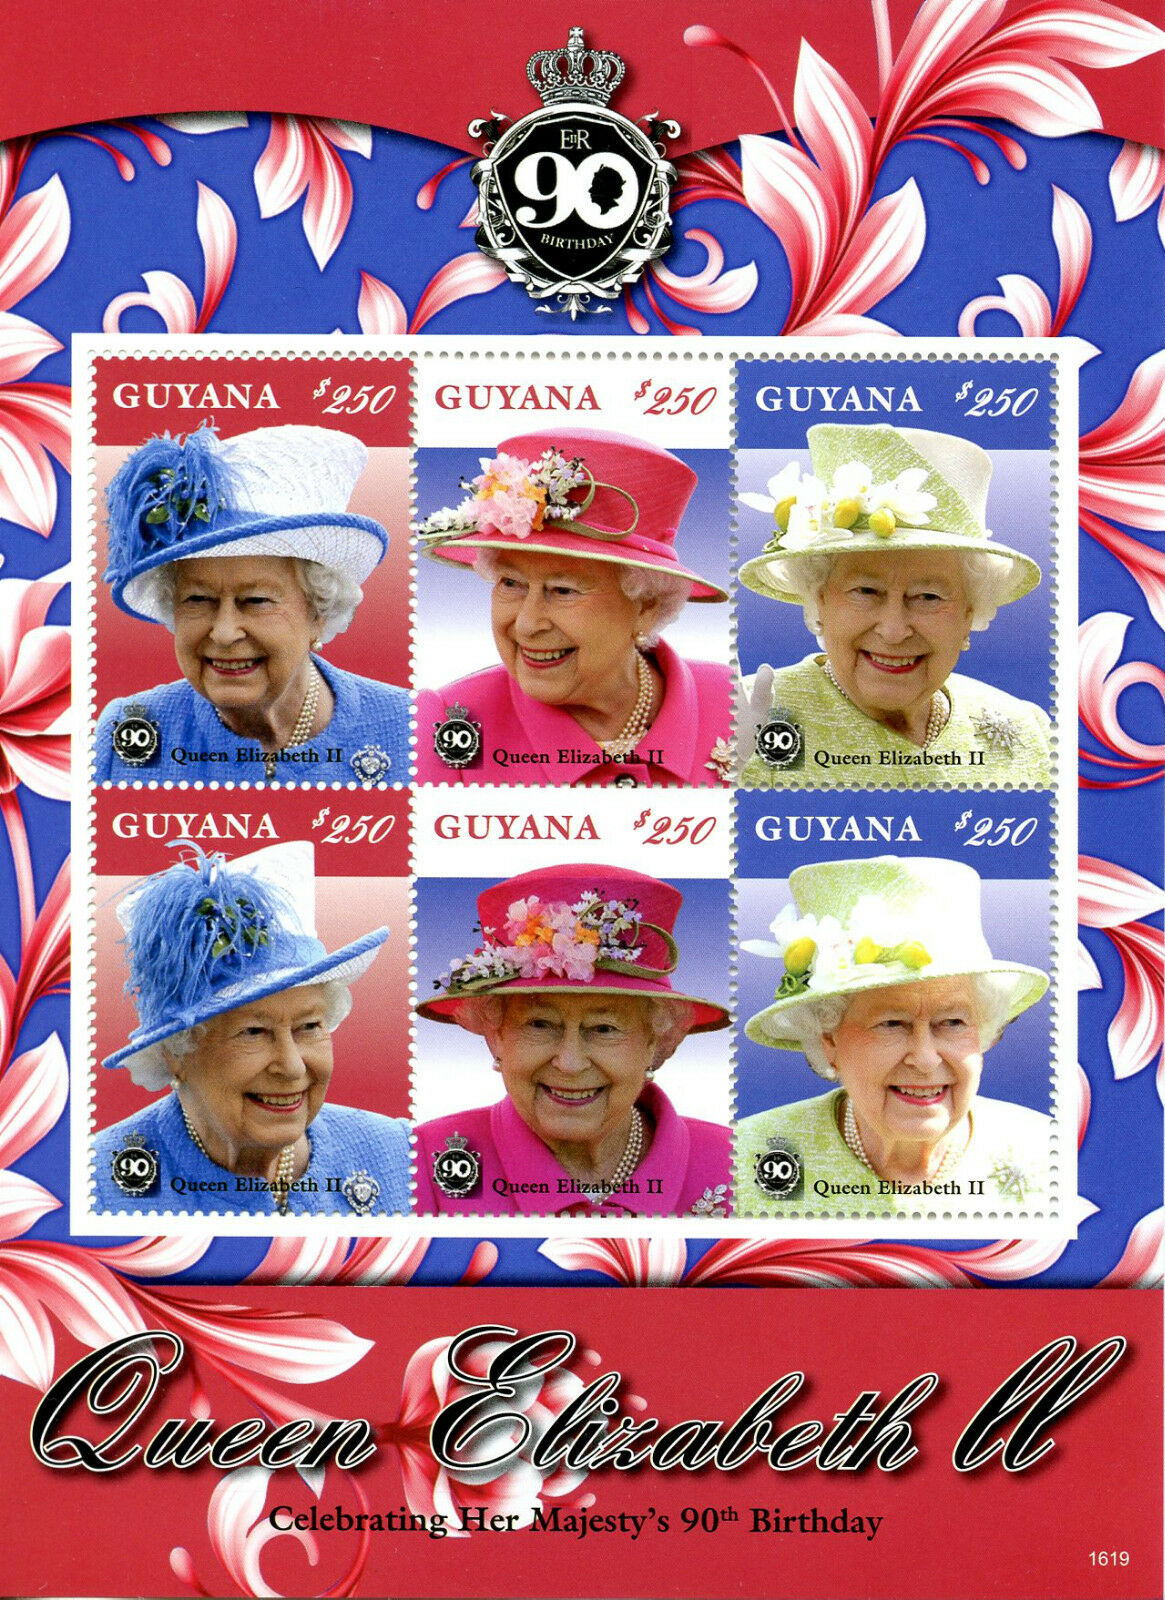 Guyana 2016 MNH Queen Elizabeth II 90th Birthday Anniv 6v M/S Royalty Stamps